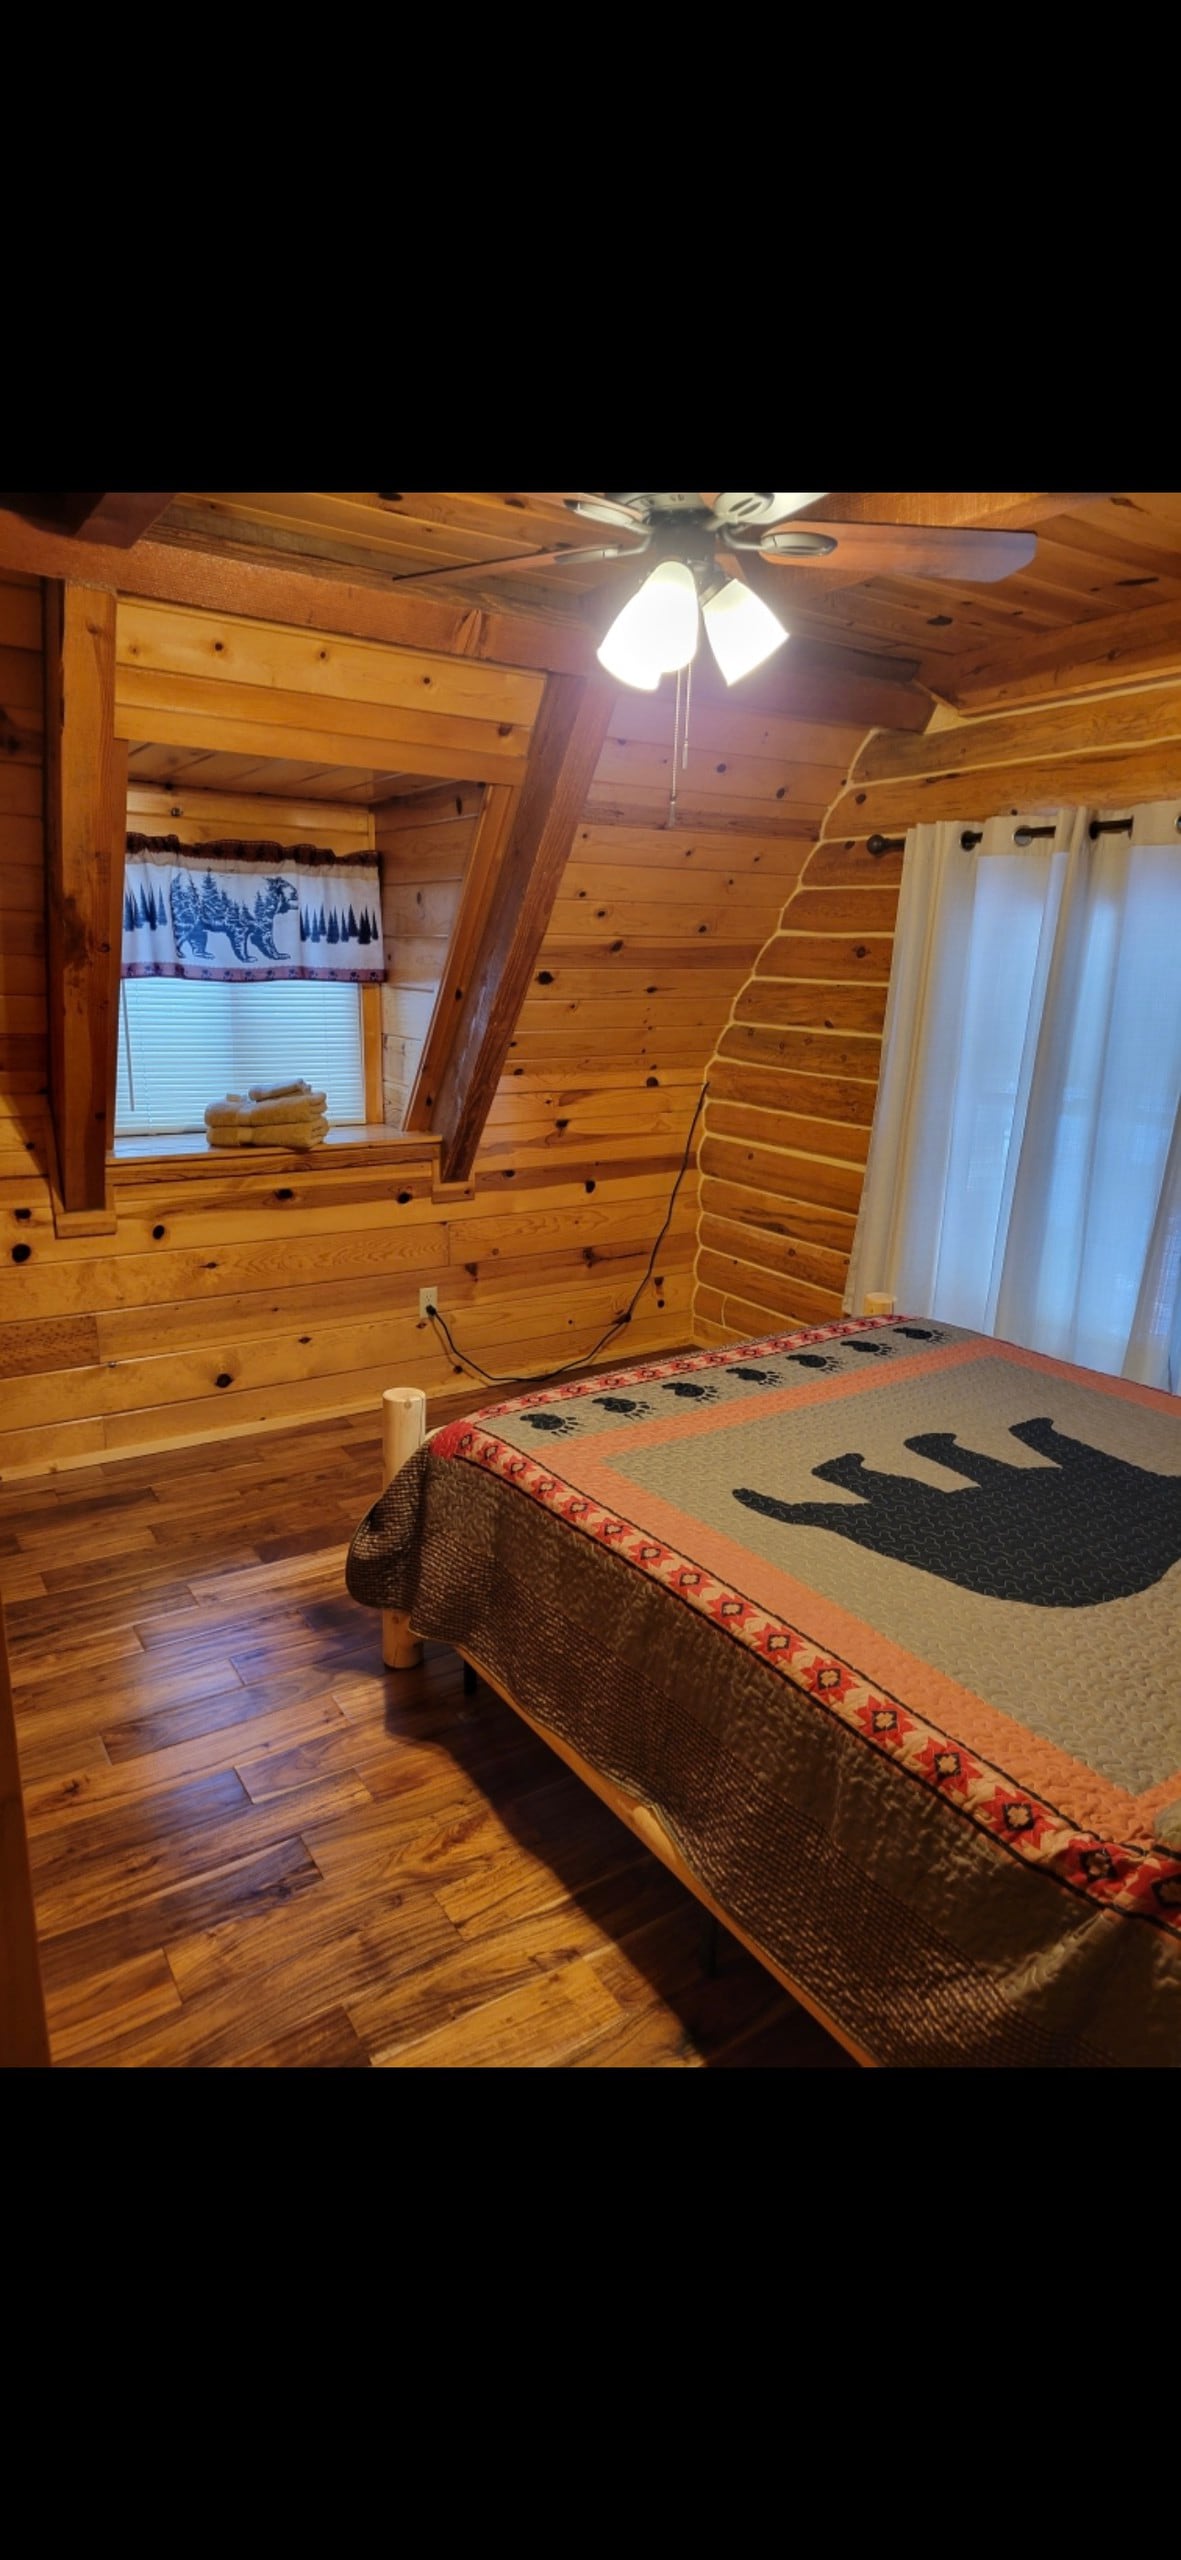 4 bedroom Cabin close to Lassen